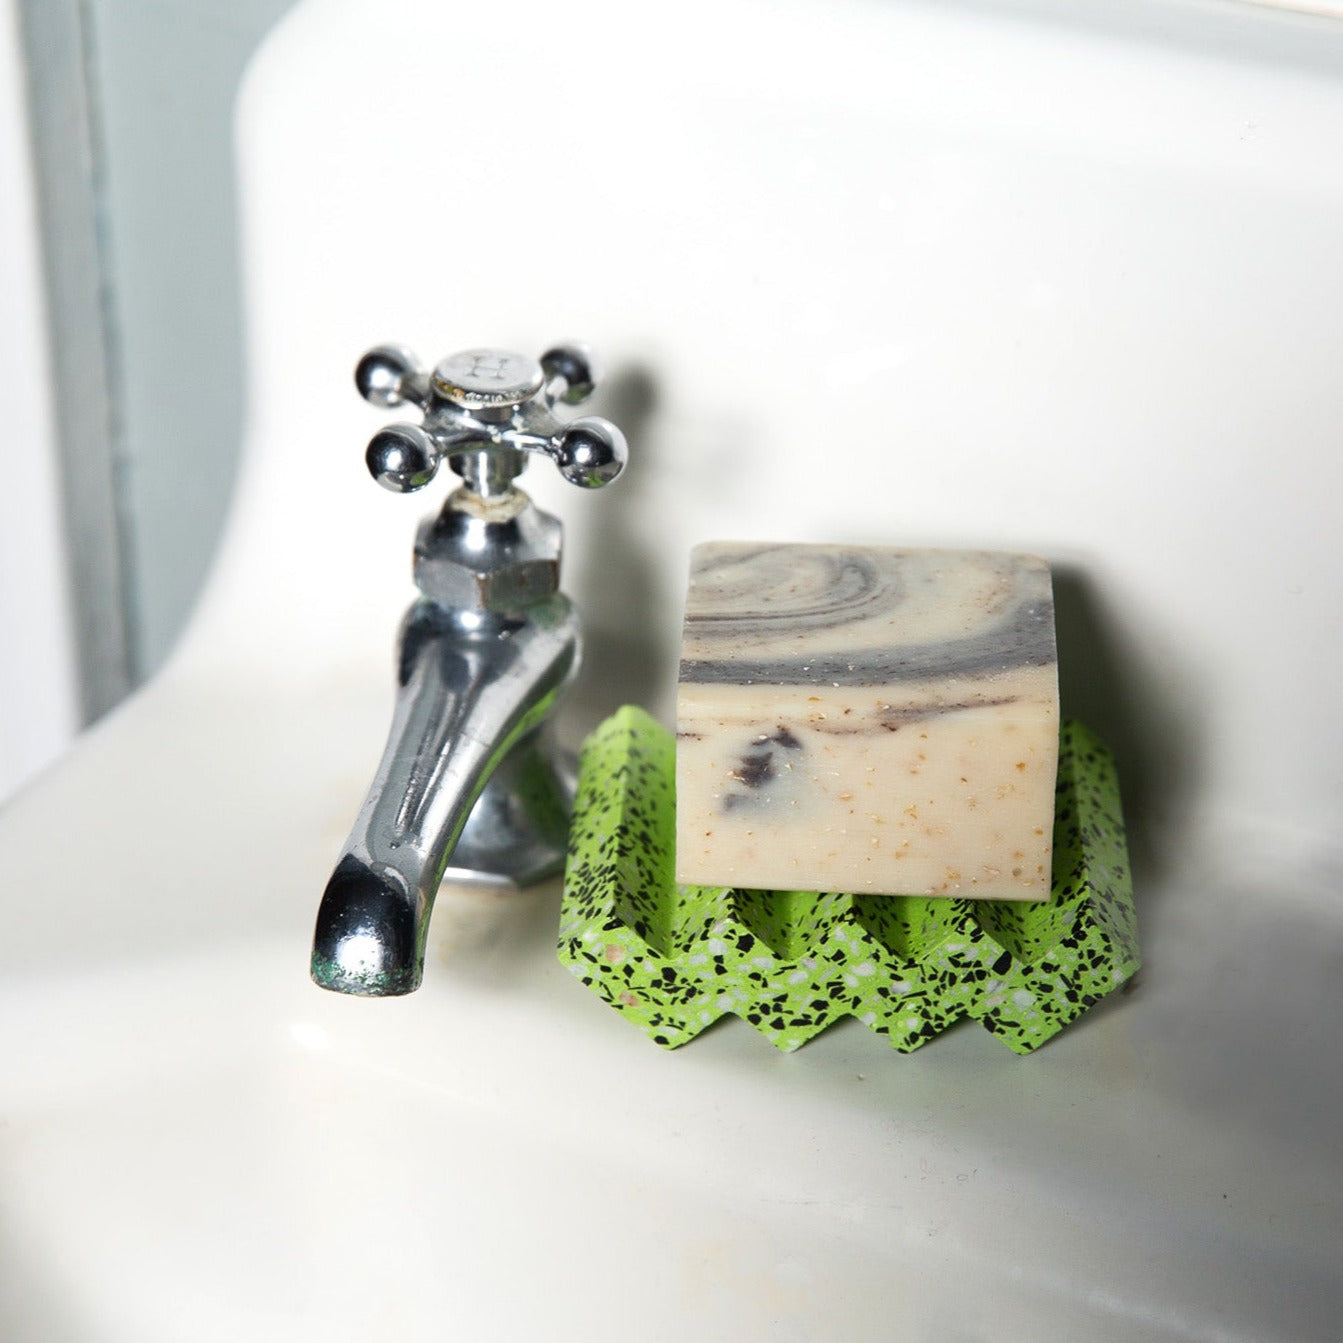 Ceramic Self-Draining Soap Dish  Handmade Bathroom Decor; Unique